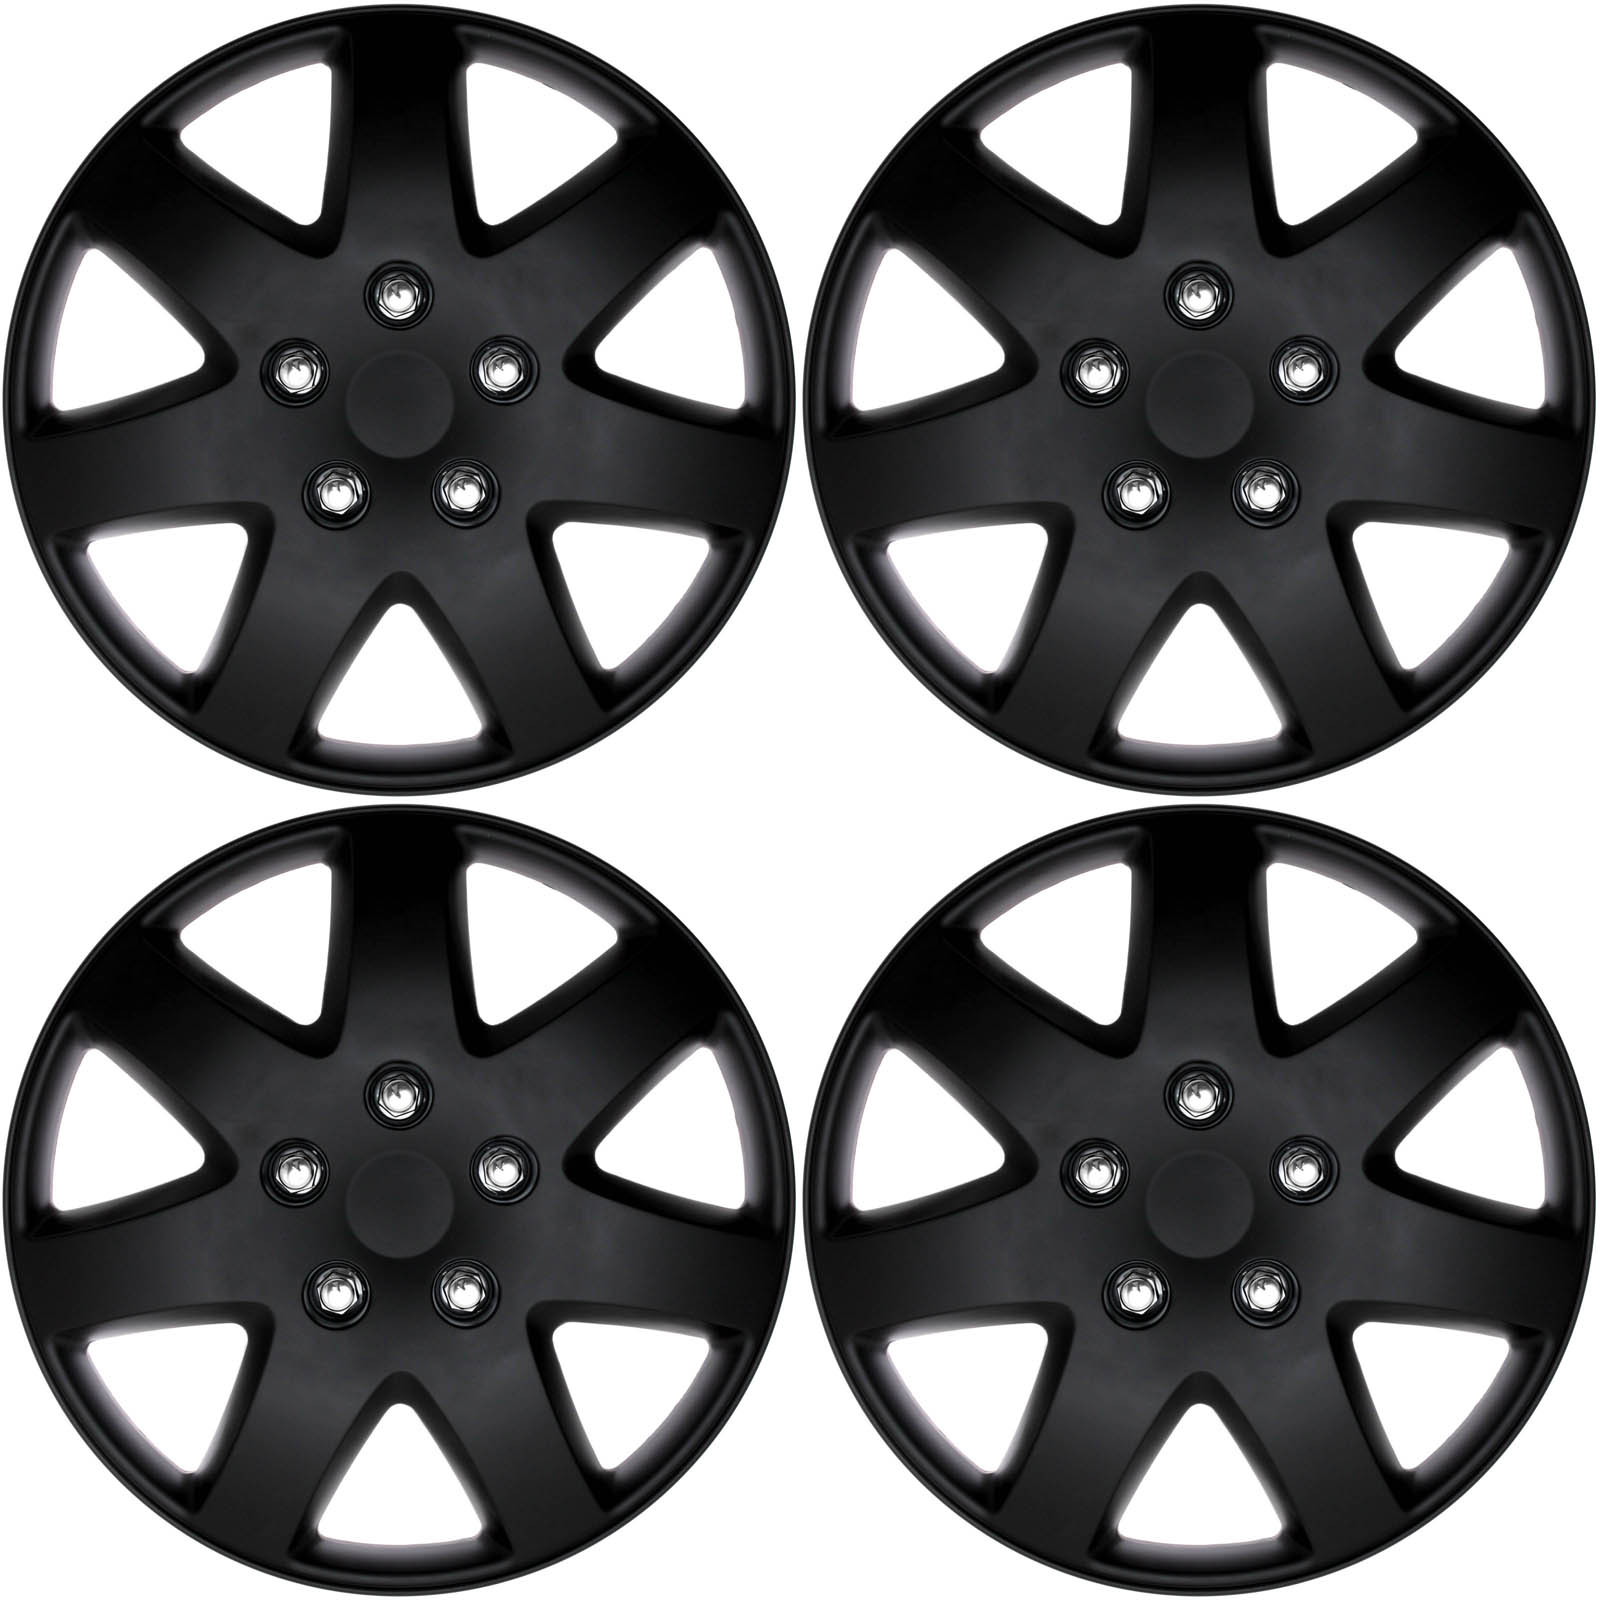 honda replacement hubcaps